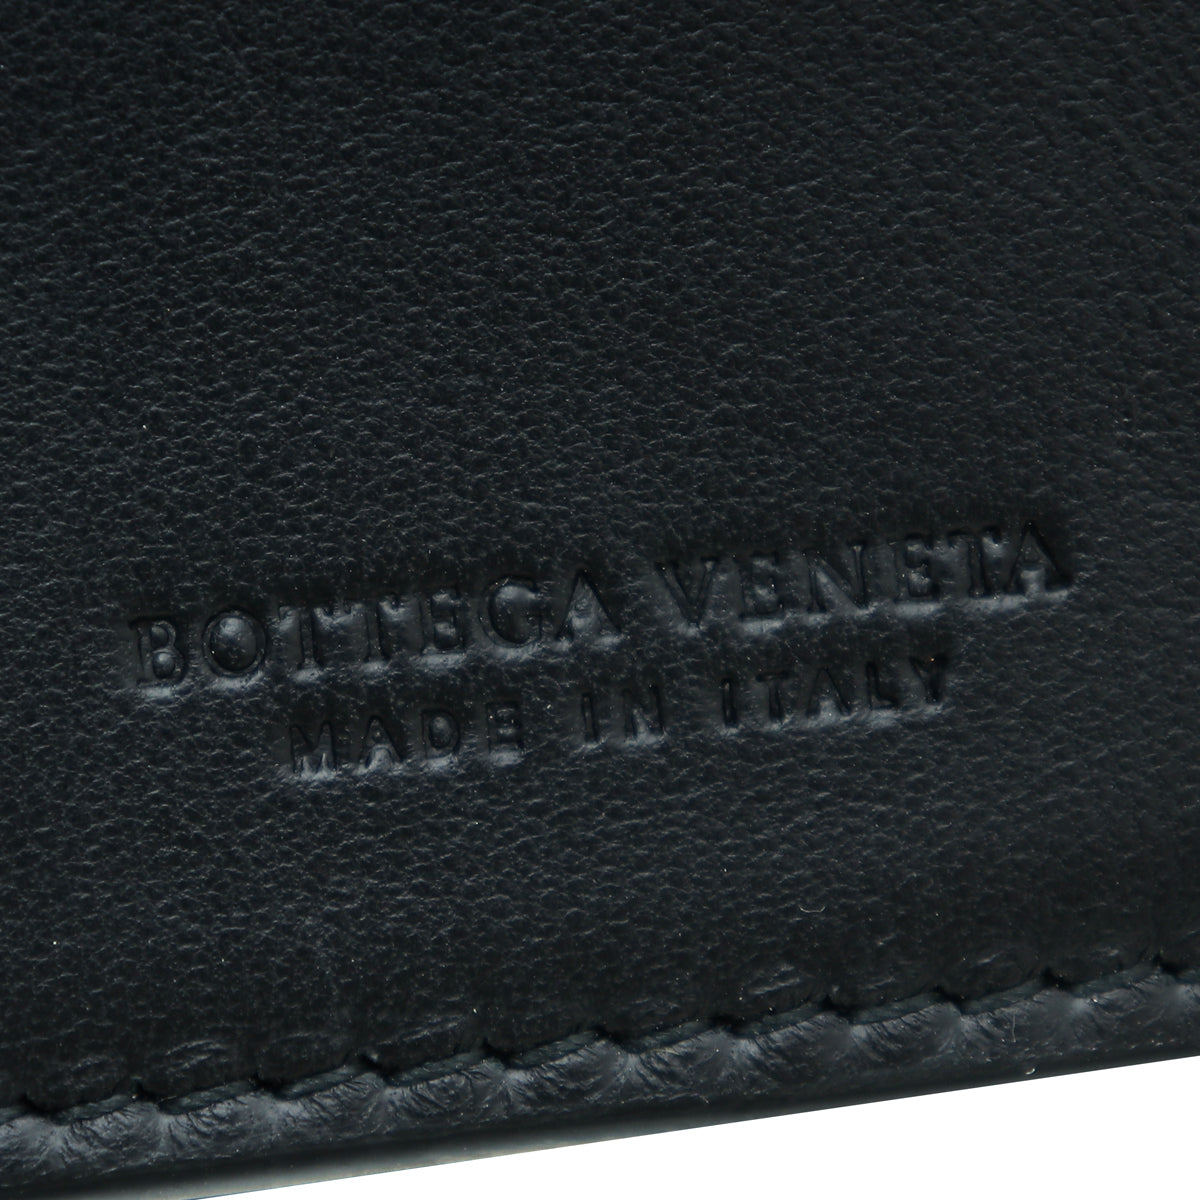 Bottega Veneta Black Intrecciato Nappa French Wallet